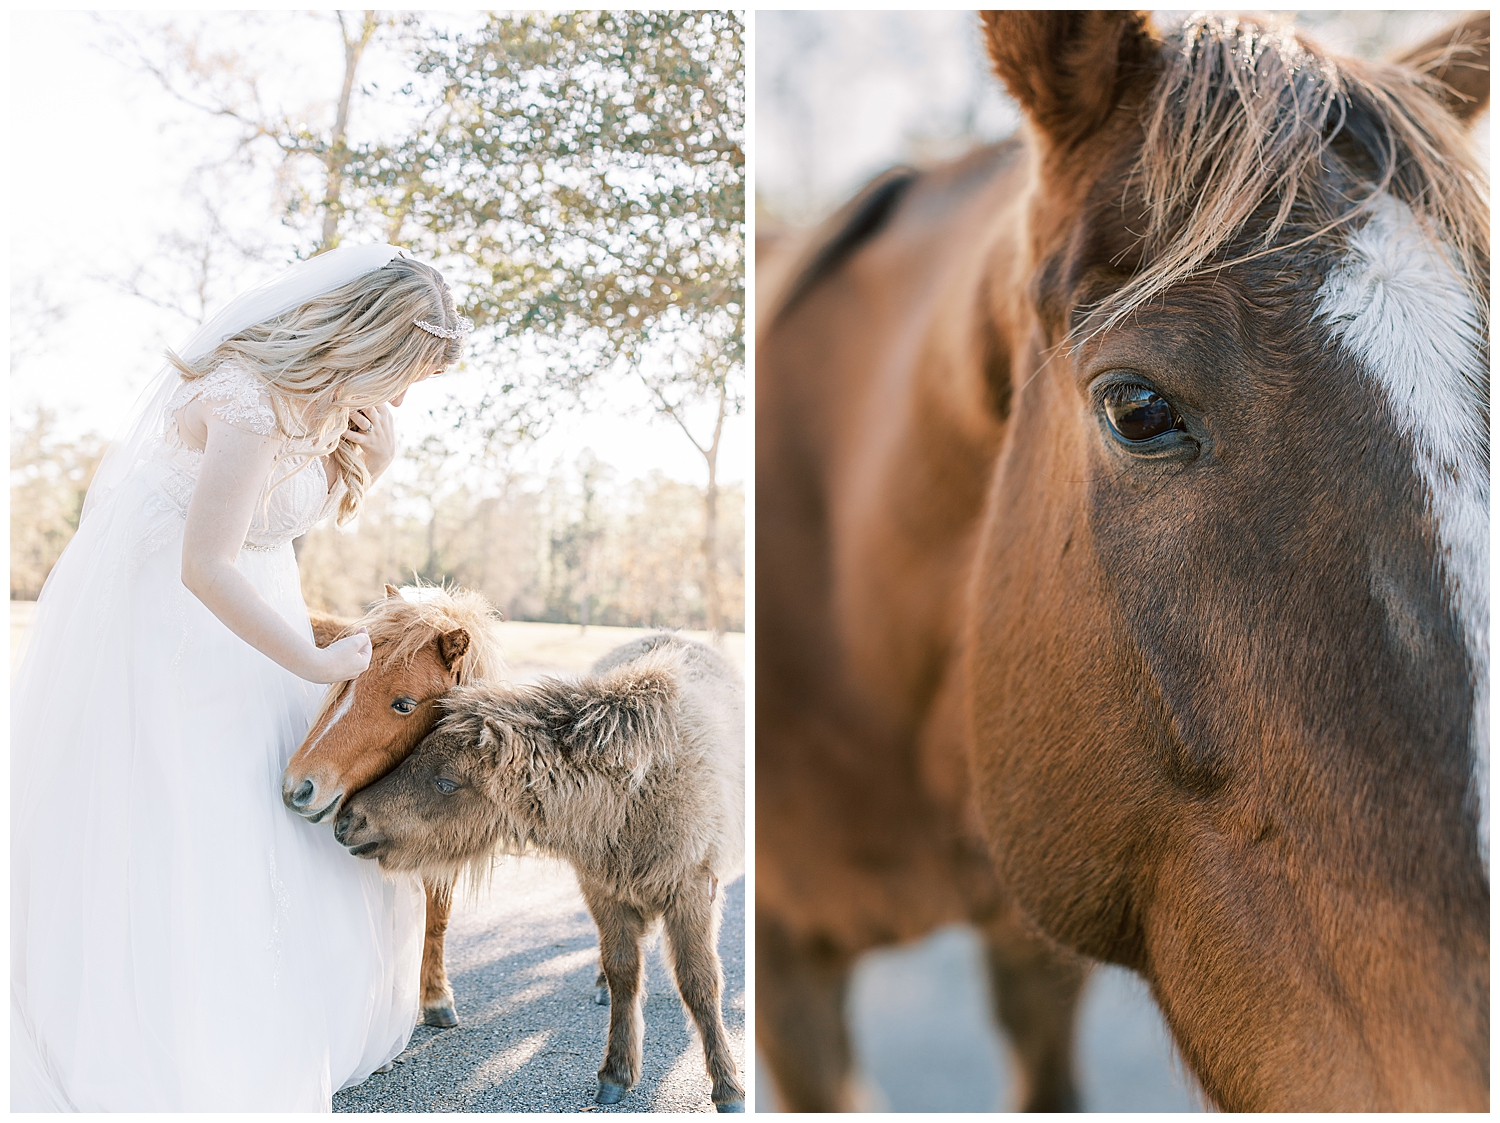 A mini pony nuzzles into the bride.